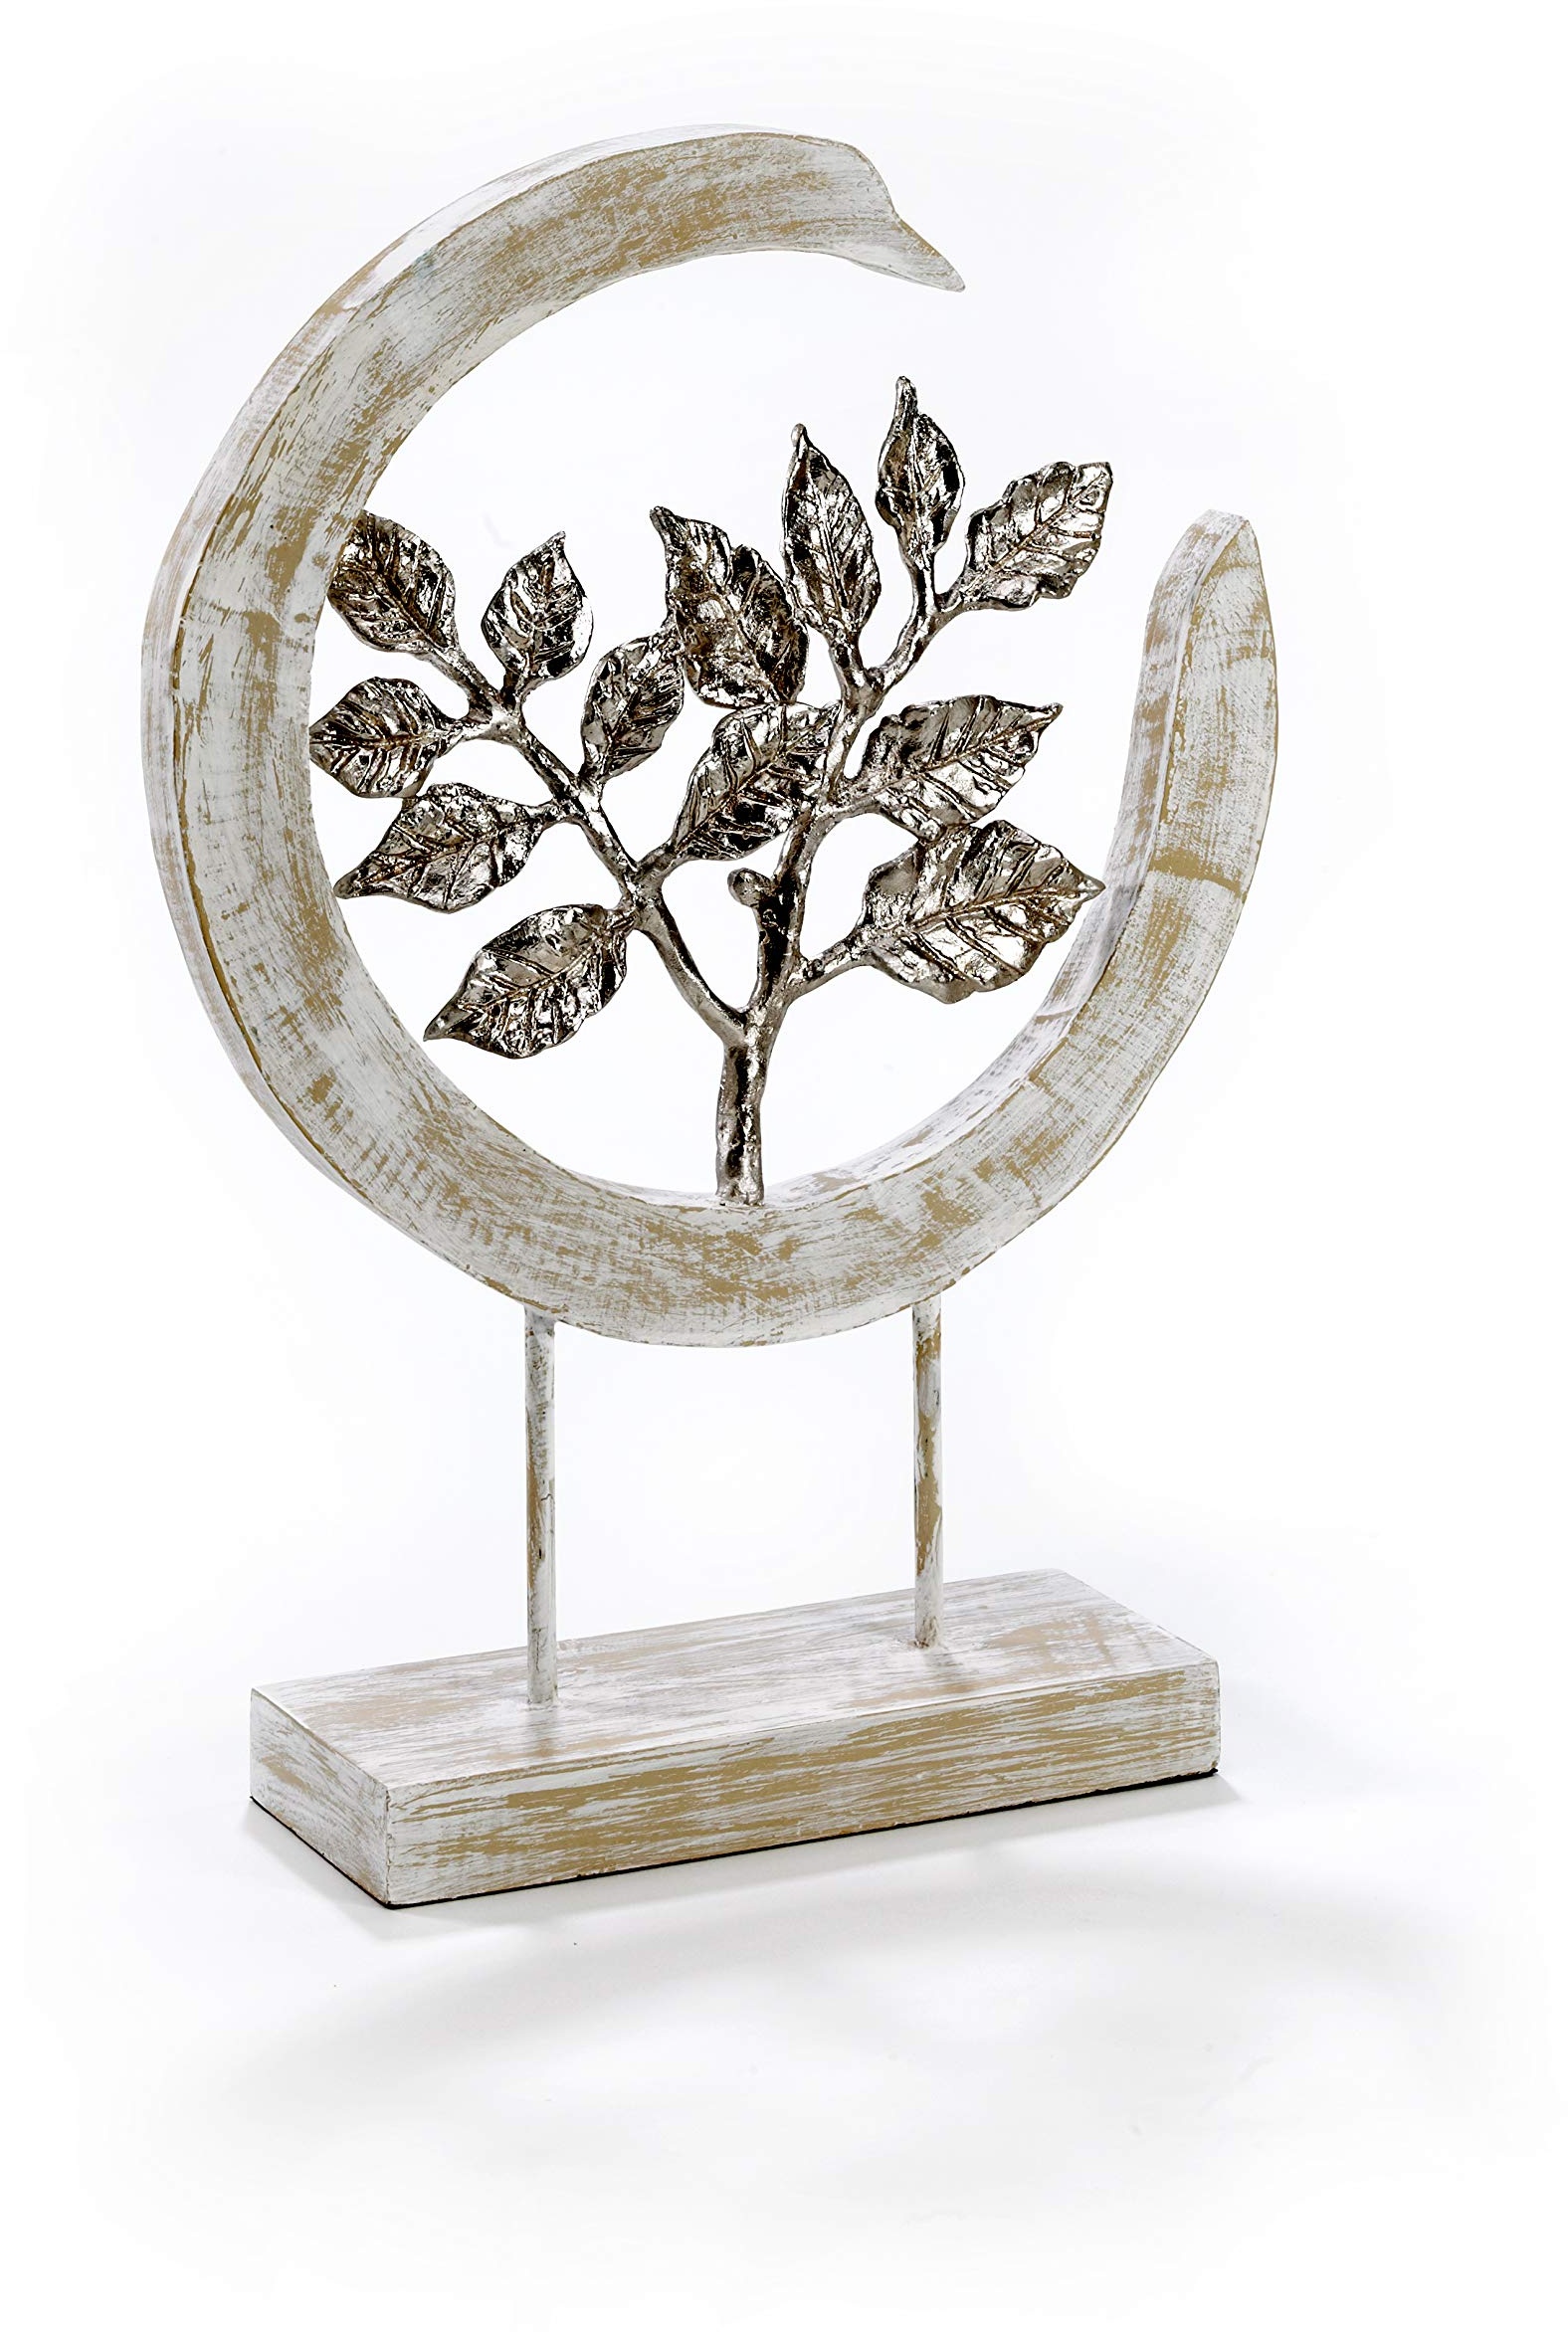 Moritz Skulptur Silver Leafs - Moderne Dekoration aus Mango-Holz und silbernen Aluminium Blättern - schöne Geschenkidee ergänzt eine Natur Deko hervorragend